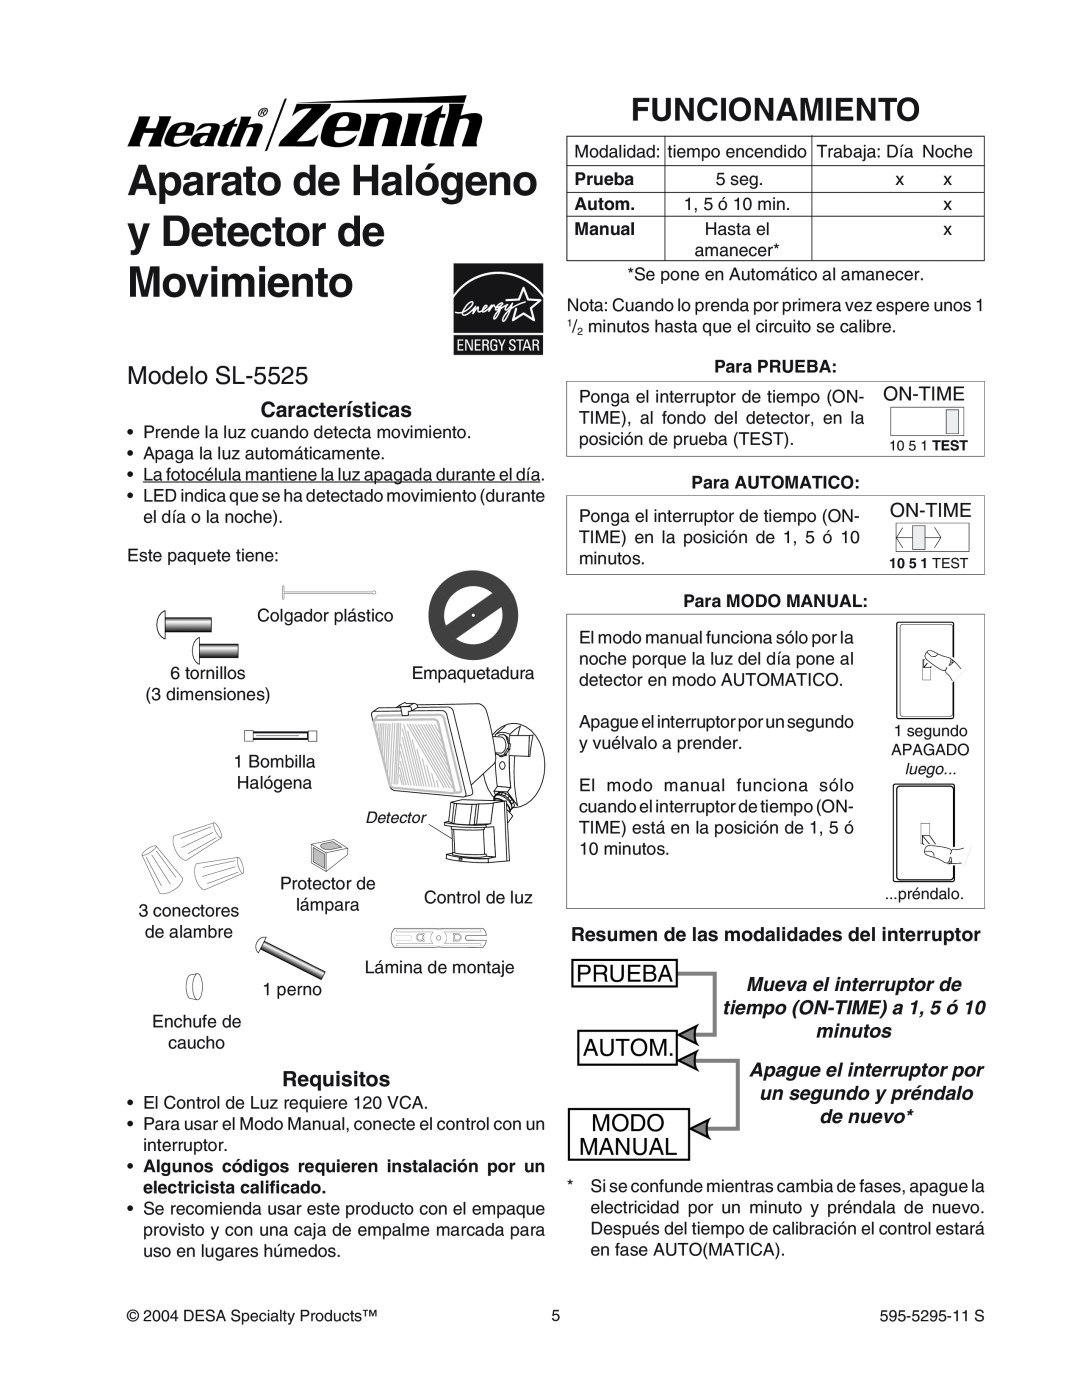 Heath Zenith Aparato de Halógeno y Detector de Movimiento, Funcionamiento, Modelo SL-5525, Características, Requisitos 